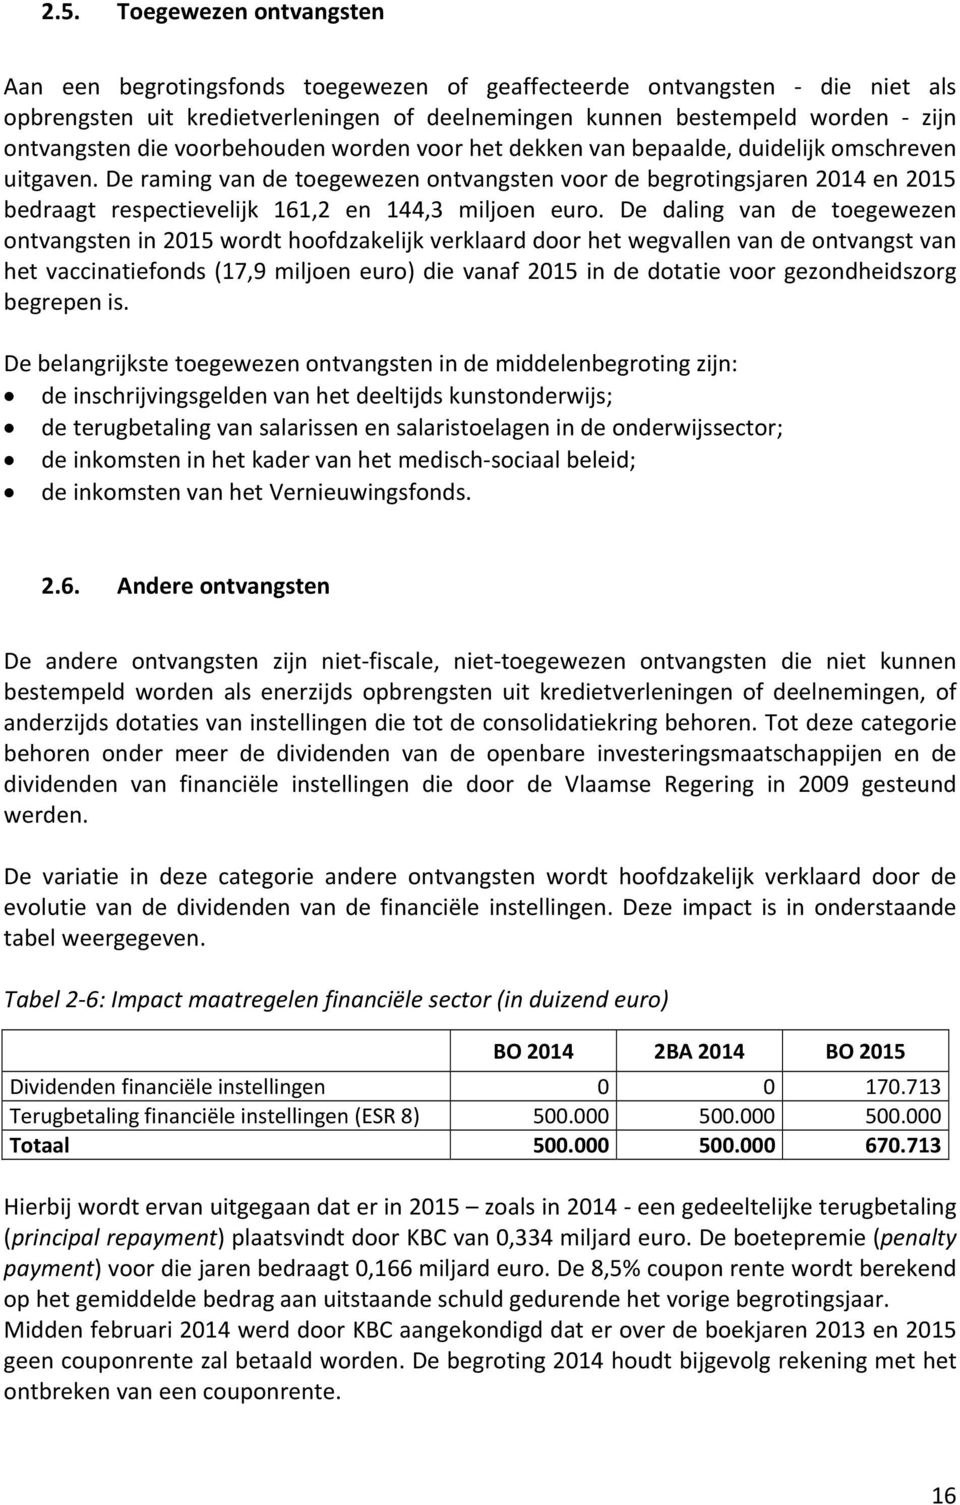 De raming van de toegewezen ontvangsten voor de begrotingsjaren 2014 en 2015 bedraagt respectievelijk 161,2 en 144,3 miljoen euro.